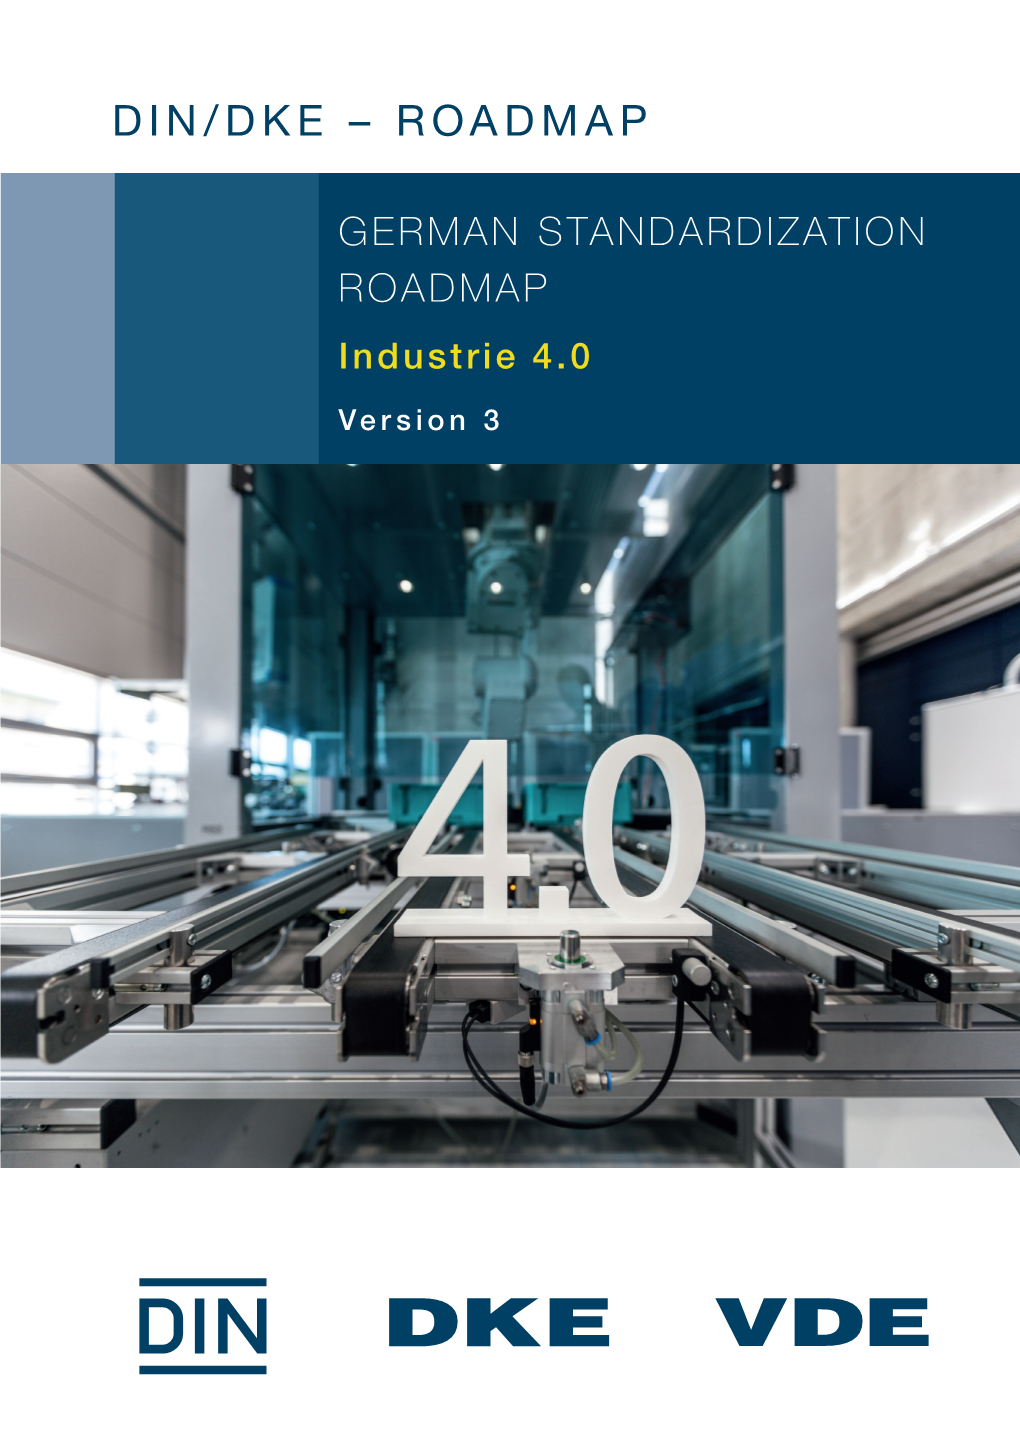 GERMAN STANDARDIZATION ROADMAP Industrie 4.0